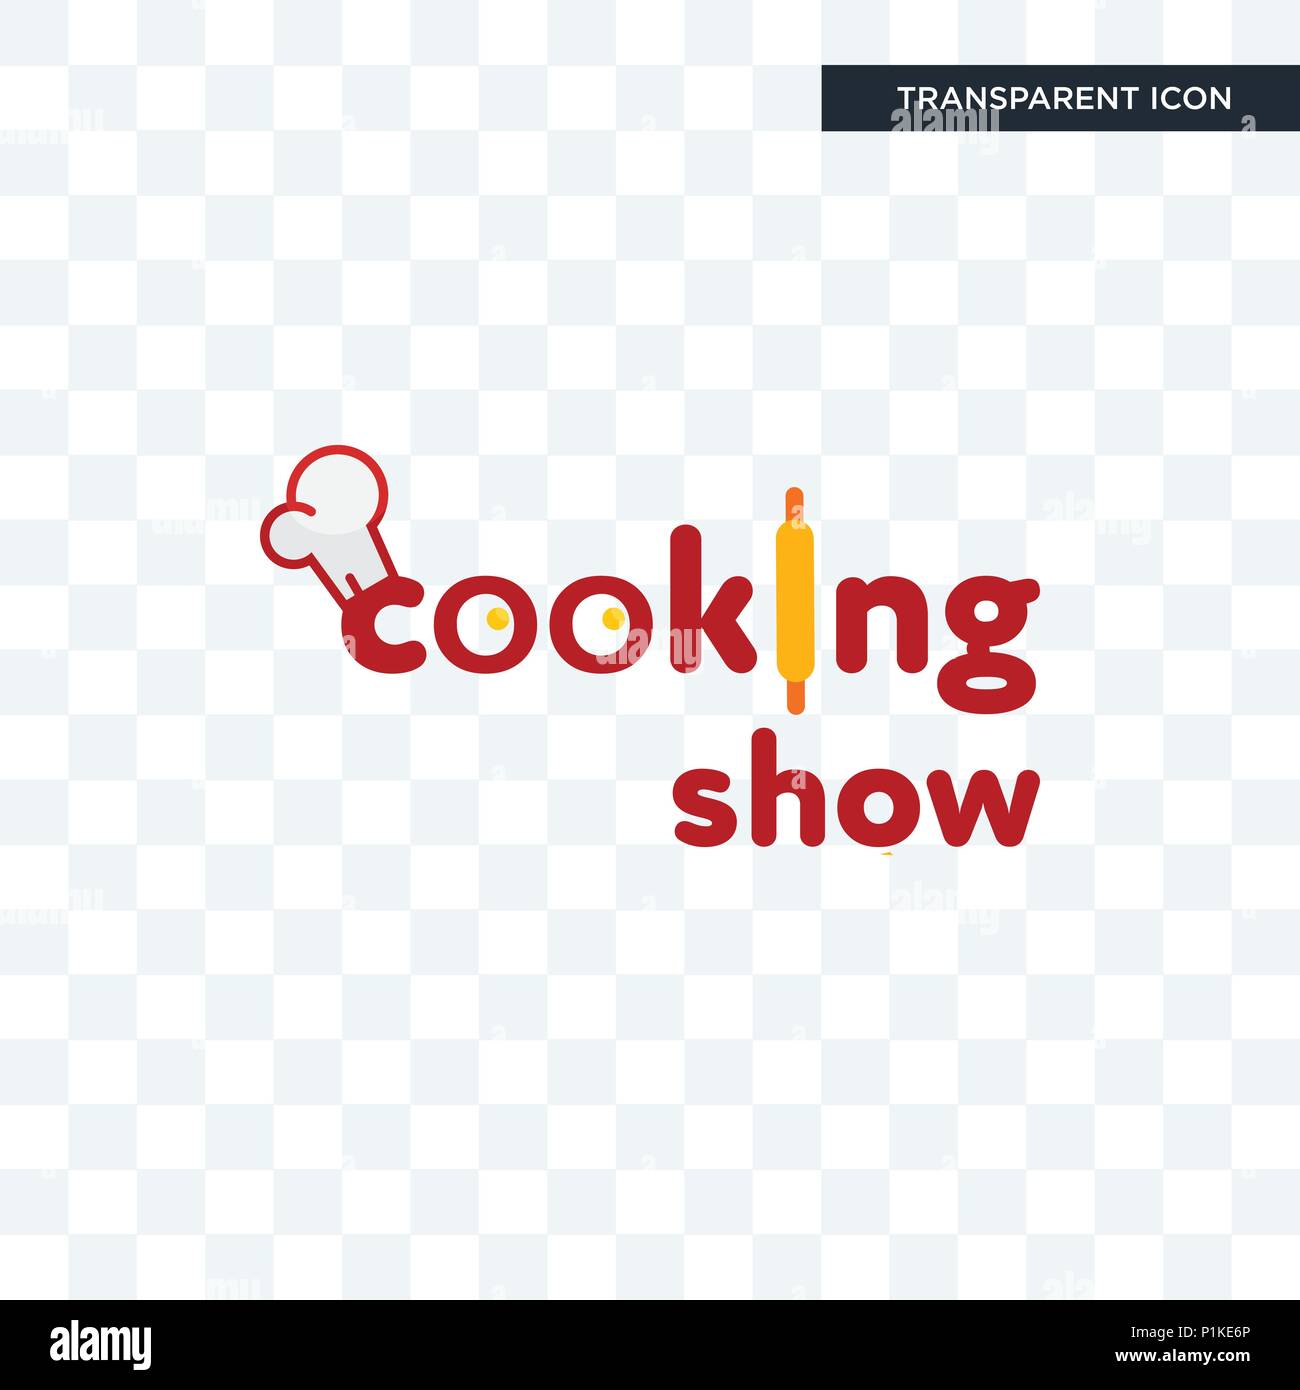 Kochshow vektor Icon auf transparentem Hintergrund isoliert, Cooking Show logo Konzept Stock Vektor